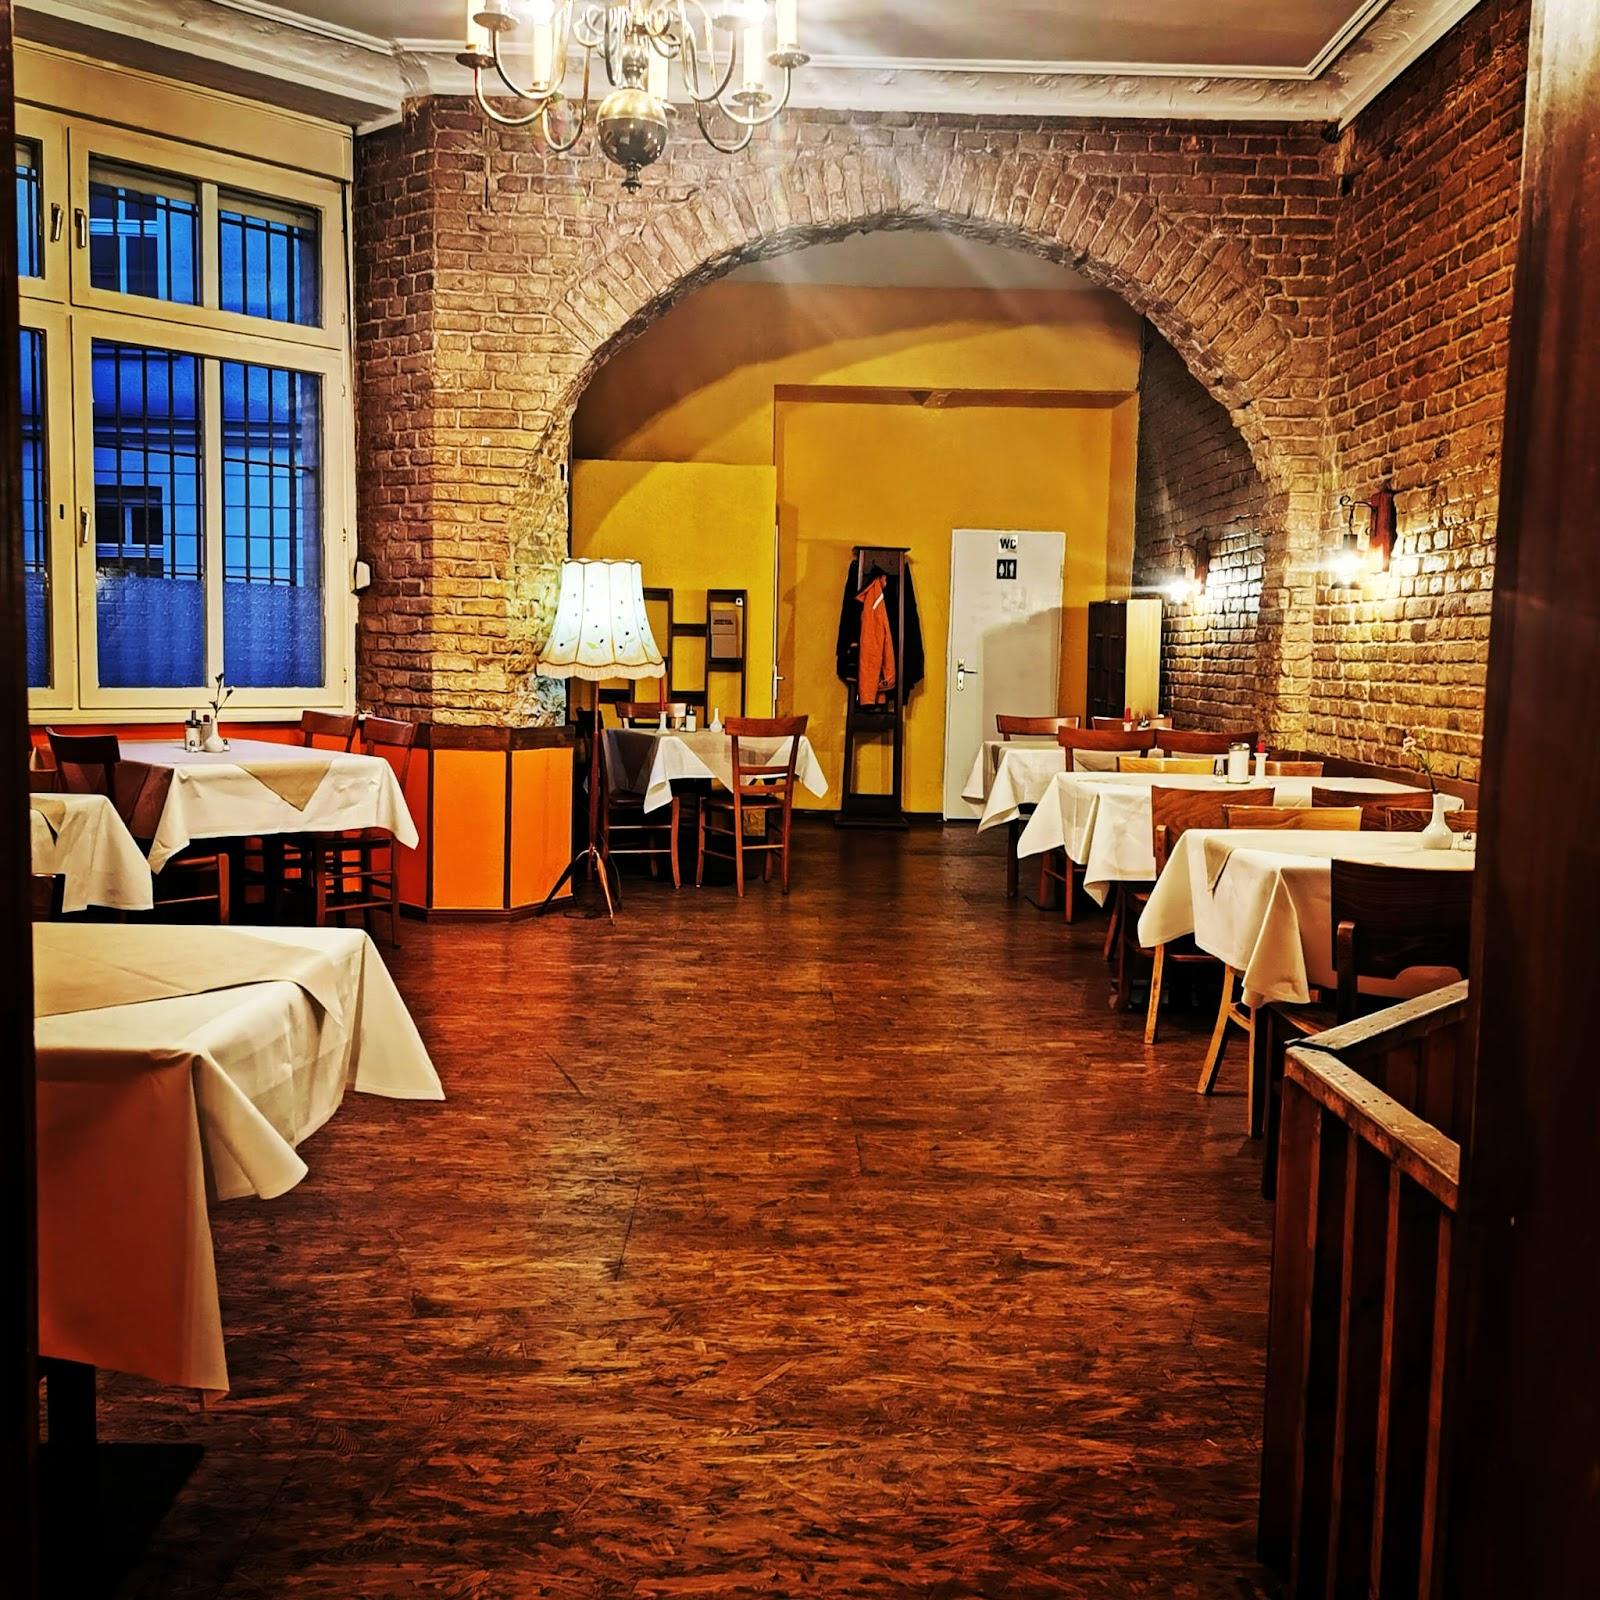 Restaurant "Sei Fornelli" in Berlin